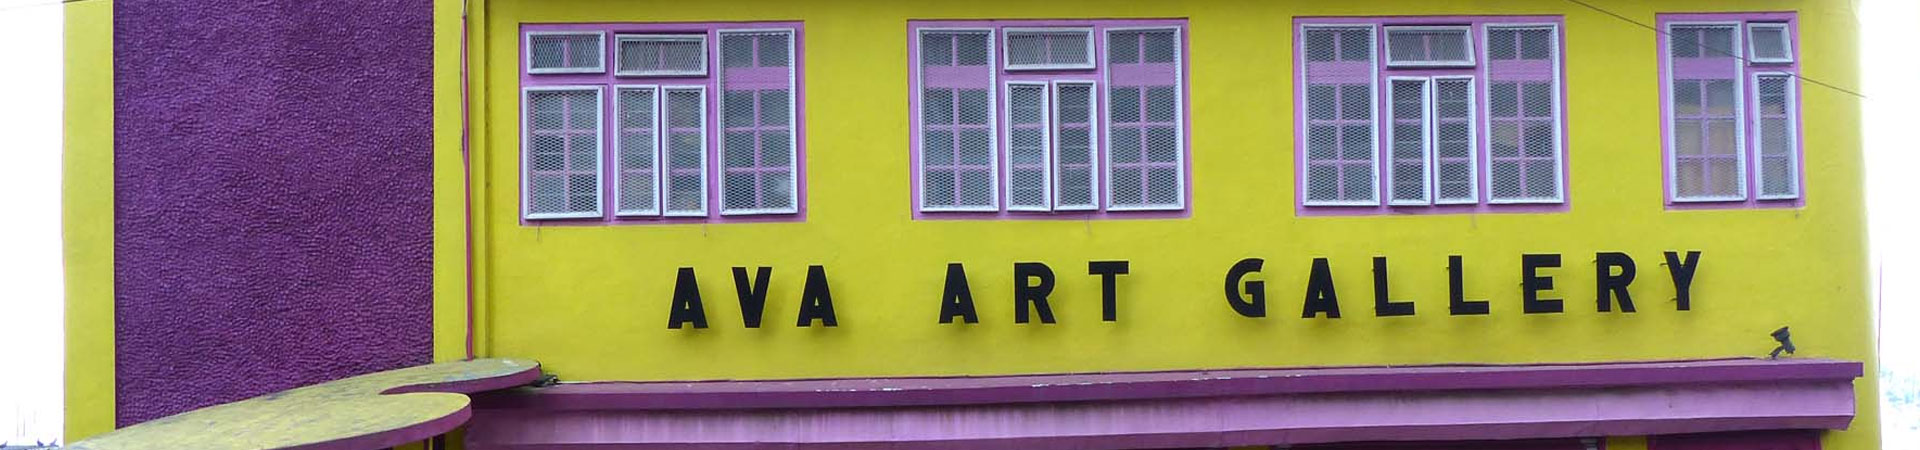 Ava art gallery